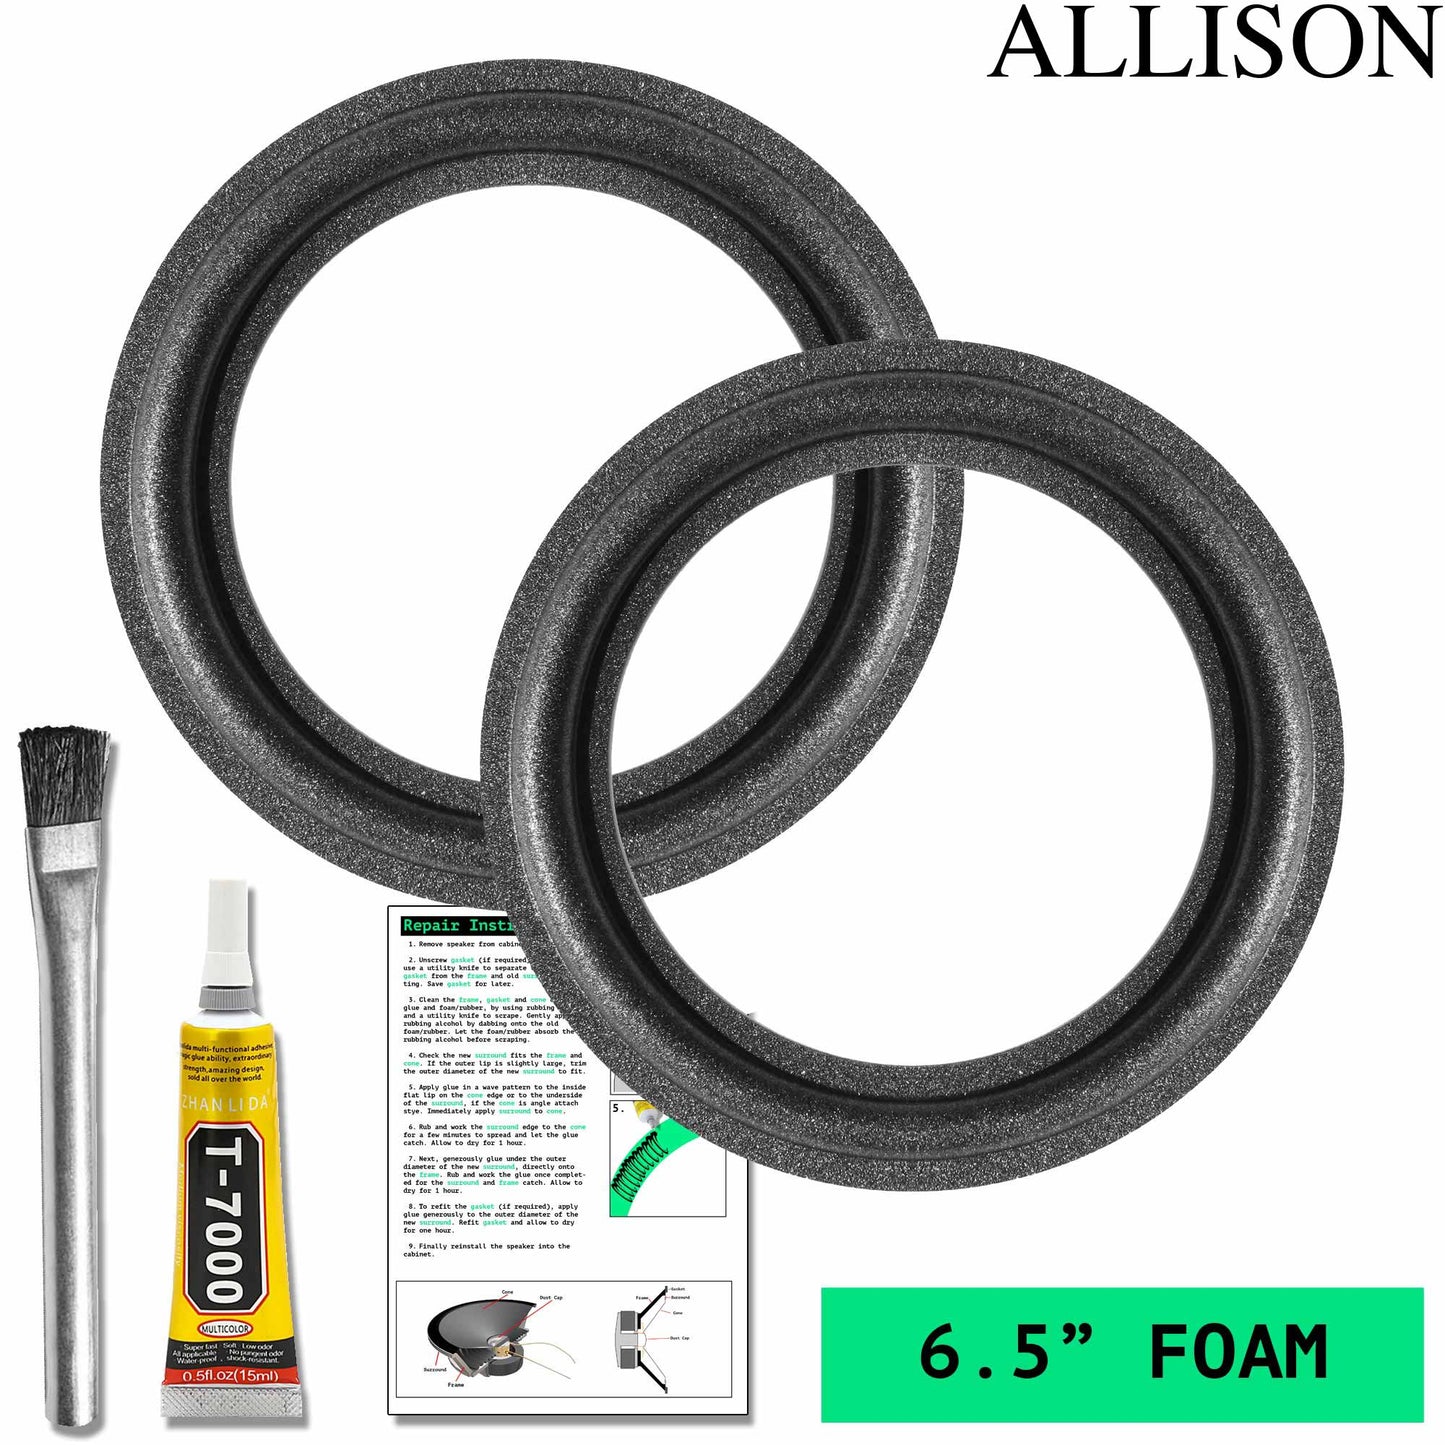 Allison 120, AL-120, AL-125, 6.5" Foam Repair Kit